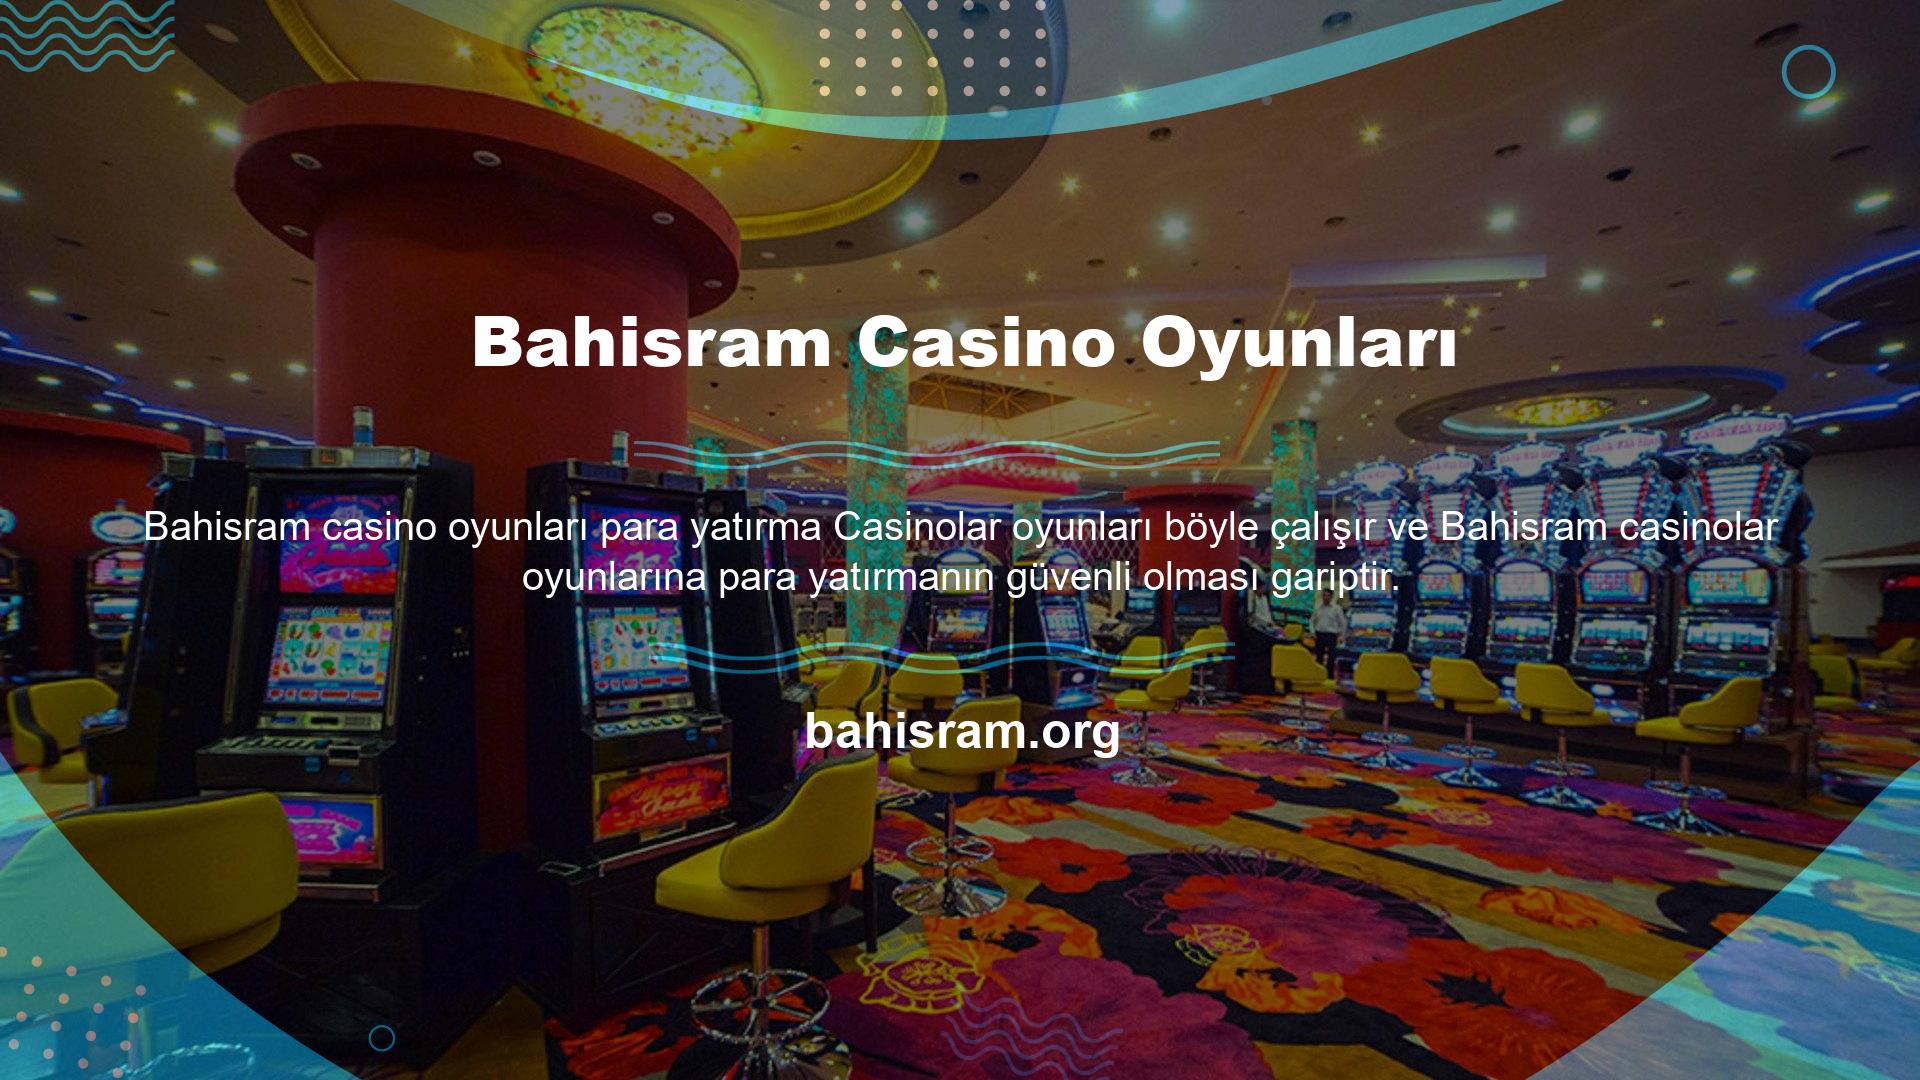 Bahisram casino oyunları  Bu oyun seçenekleri için para yatırma prosedürlerinin çoğunlukla güvenilir olduğunu web sitesindeki lisans durumundan görebiliriz